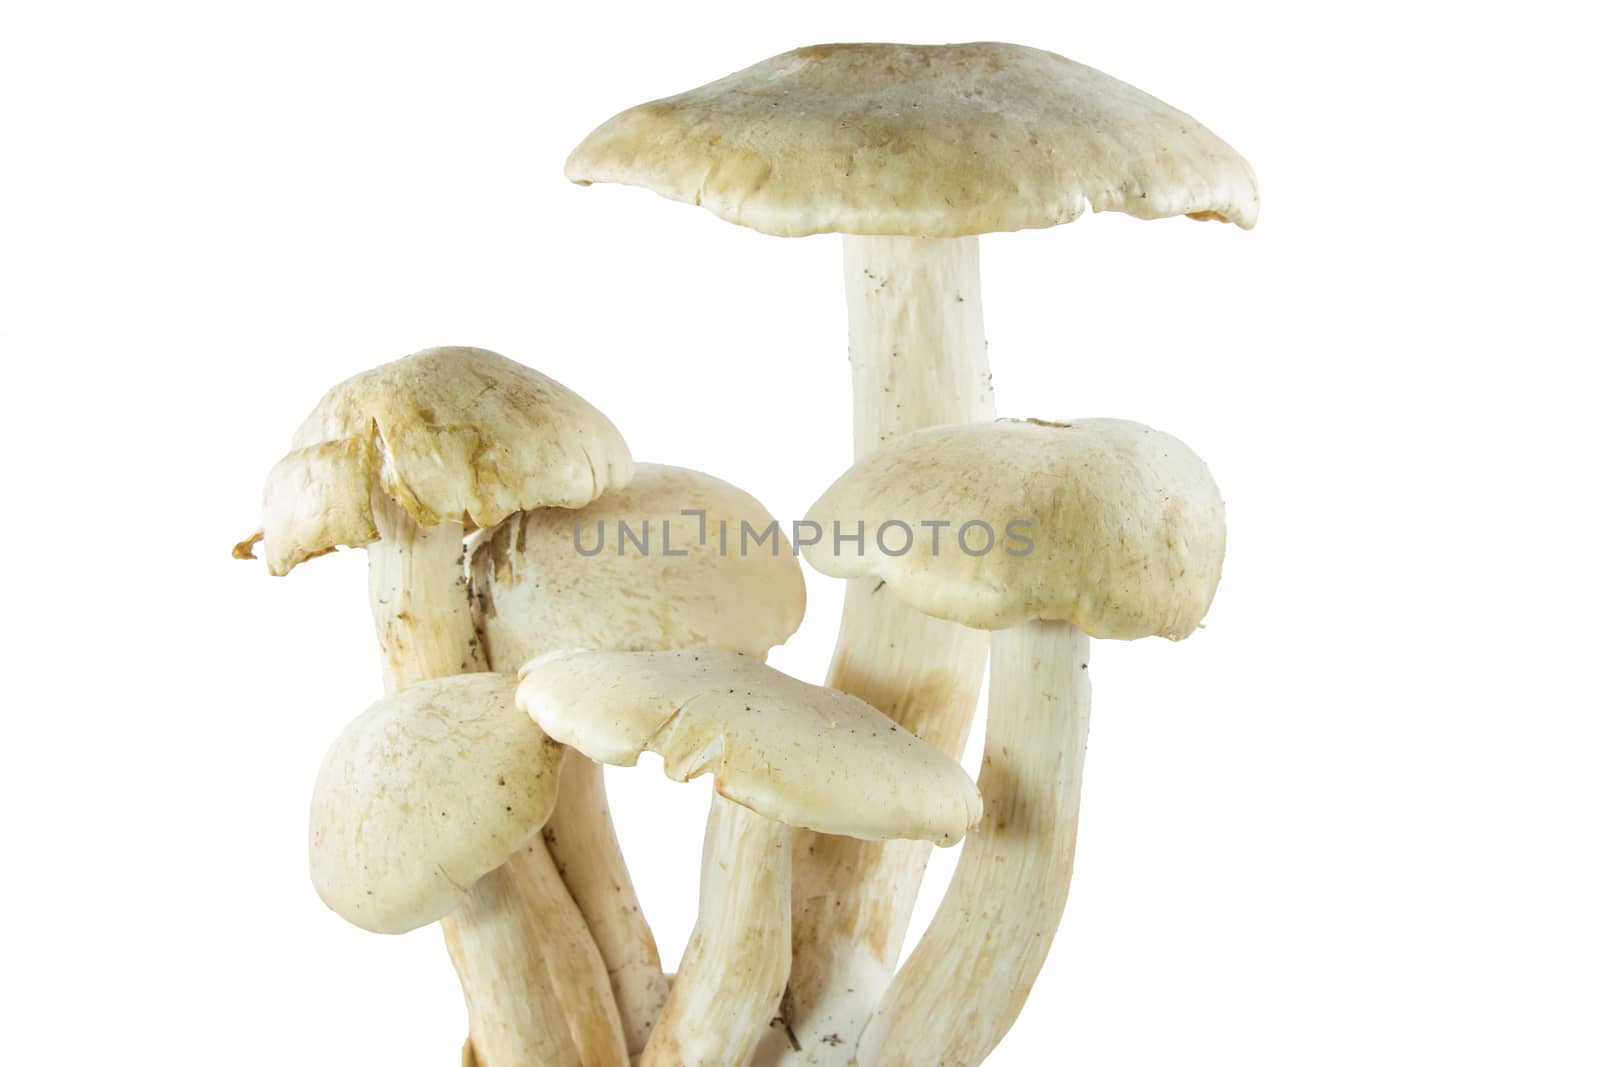 group of mushroom isolated on white background